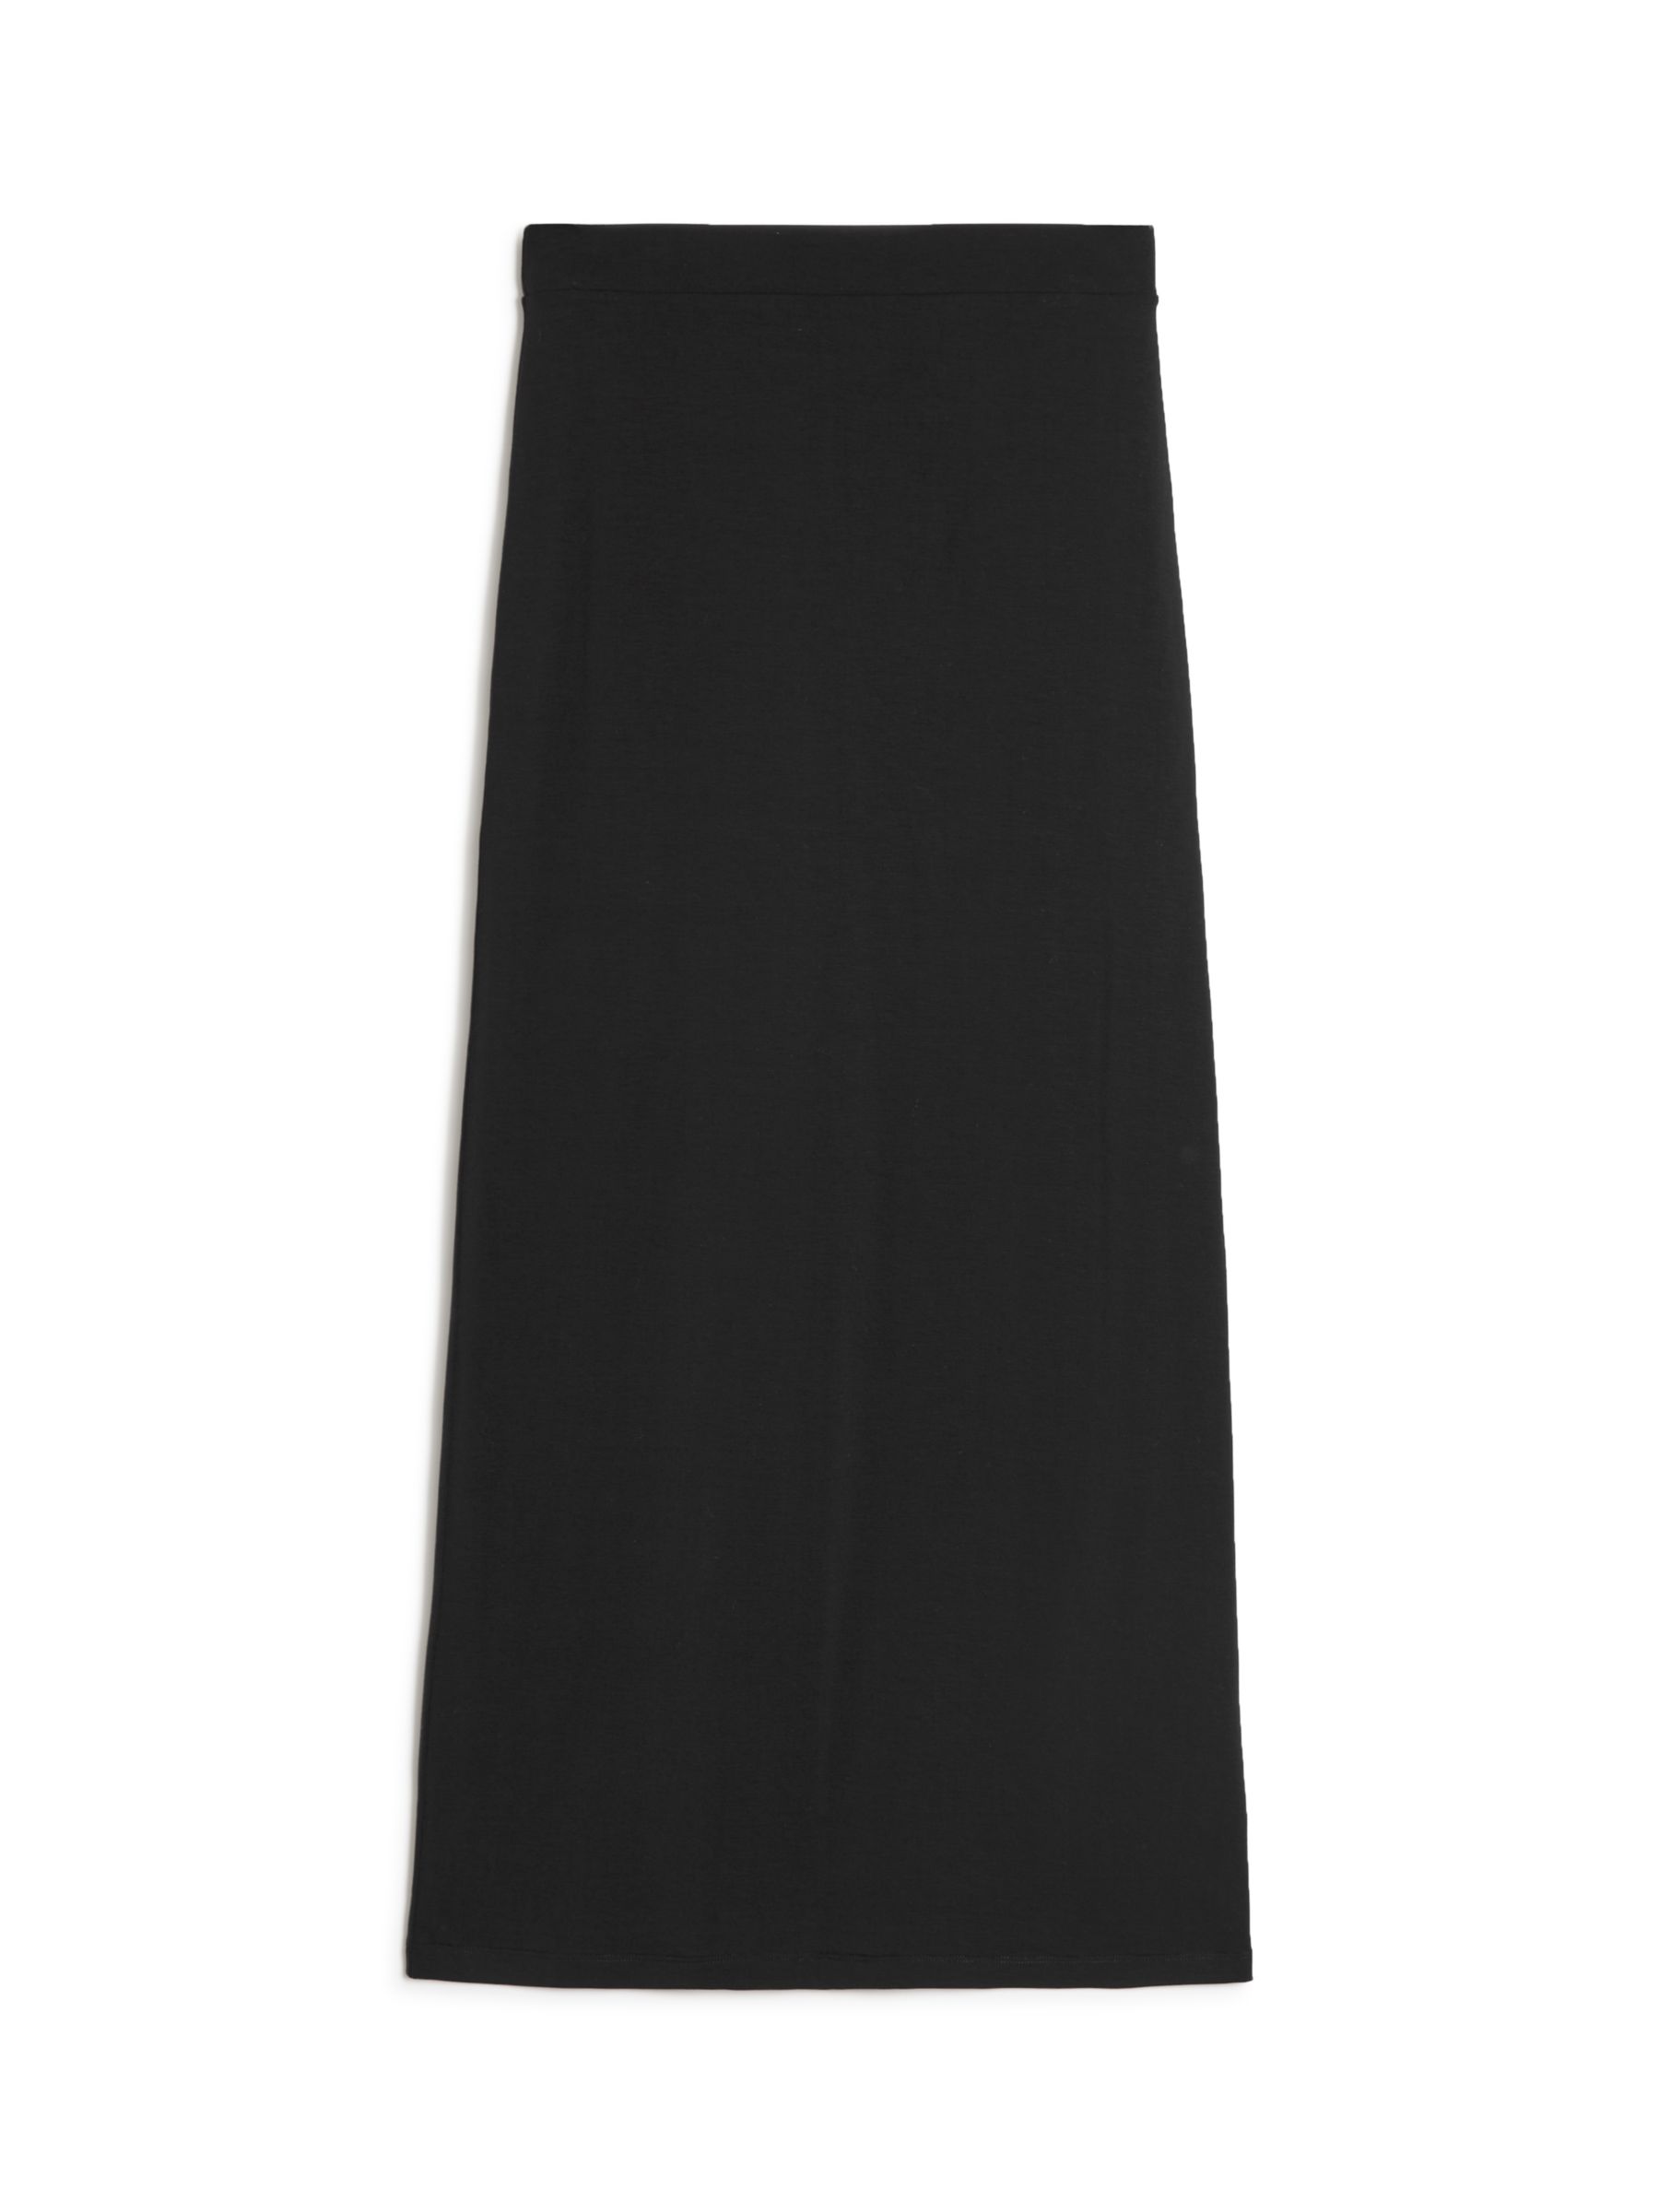 Albaray Tube Skirt, Black at John Lewis & Partners